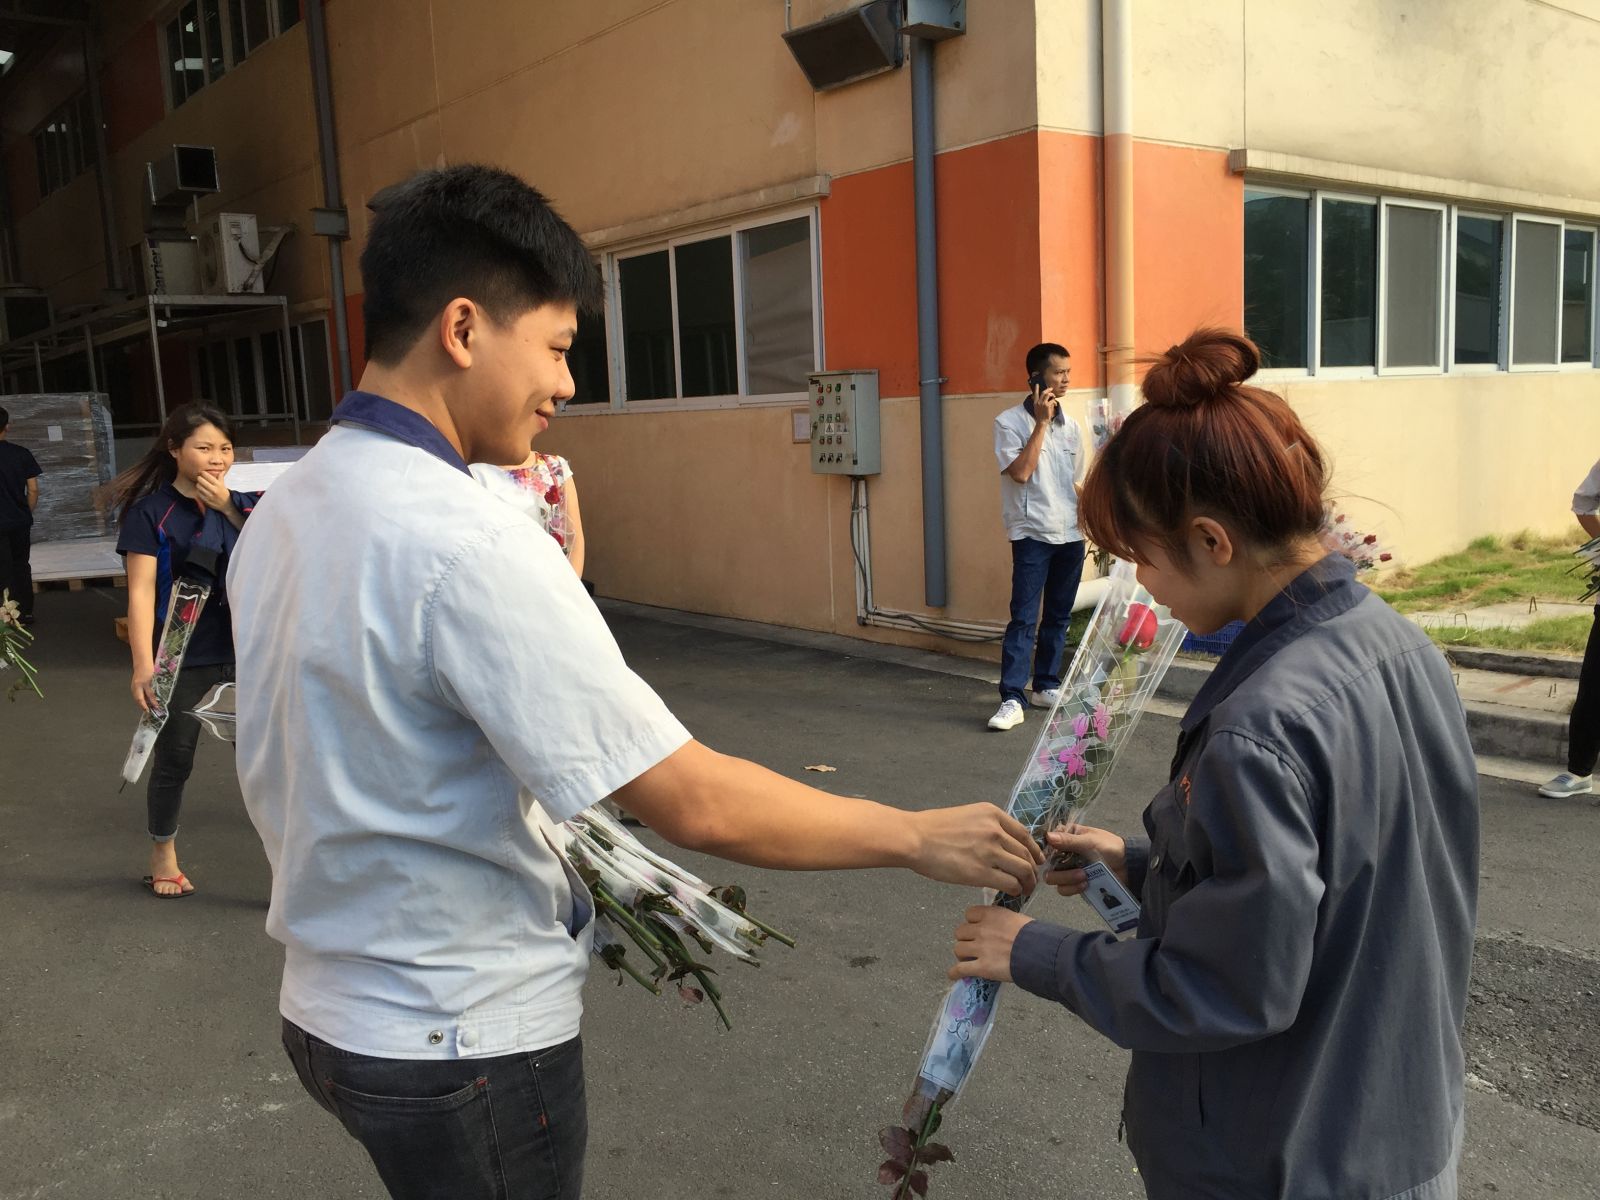  Tổ chức tặng hoa cho các chị công nhân viên nhân ngày 08/03. Phúc lợi cho nhân viên chúng tôi luôn đứng hàng đầu